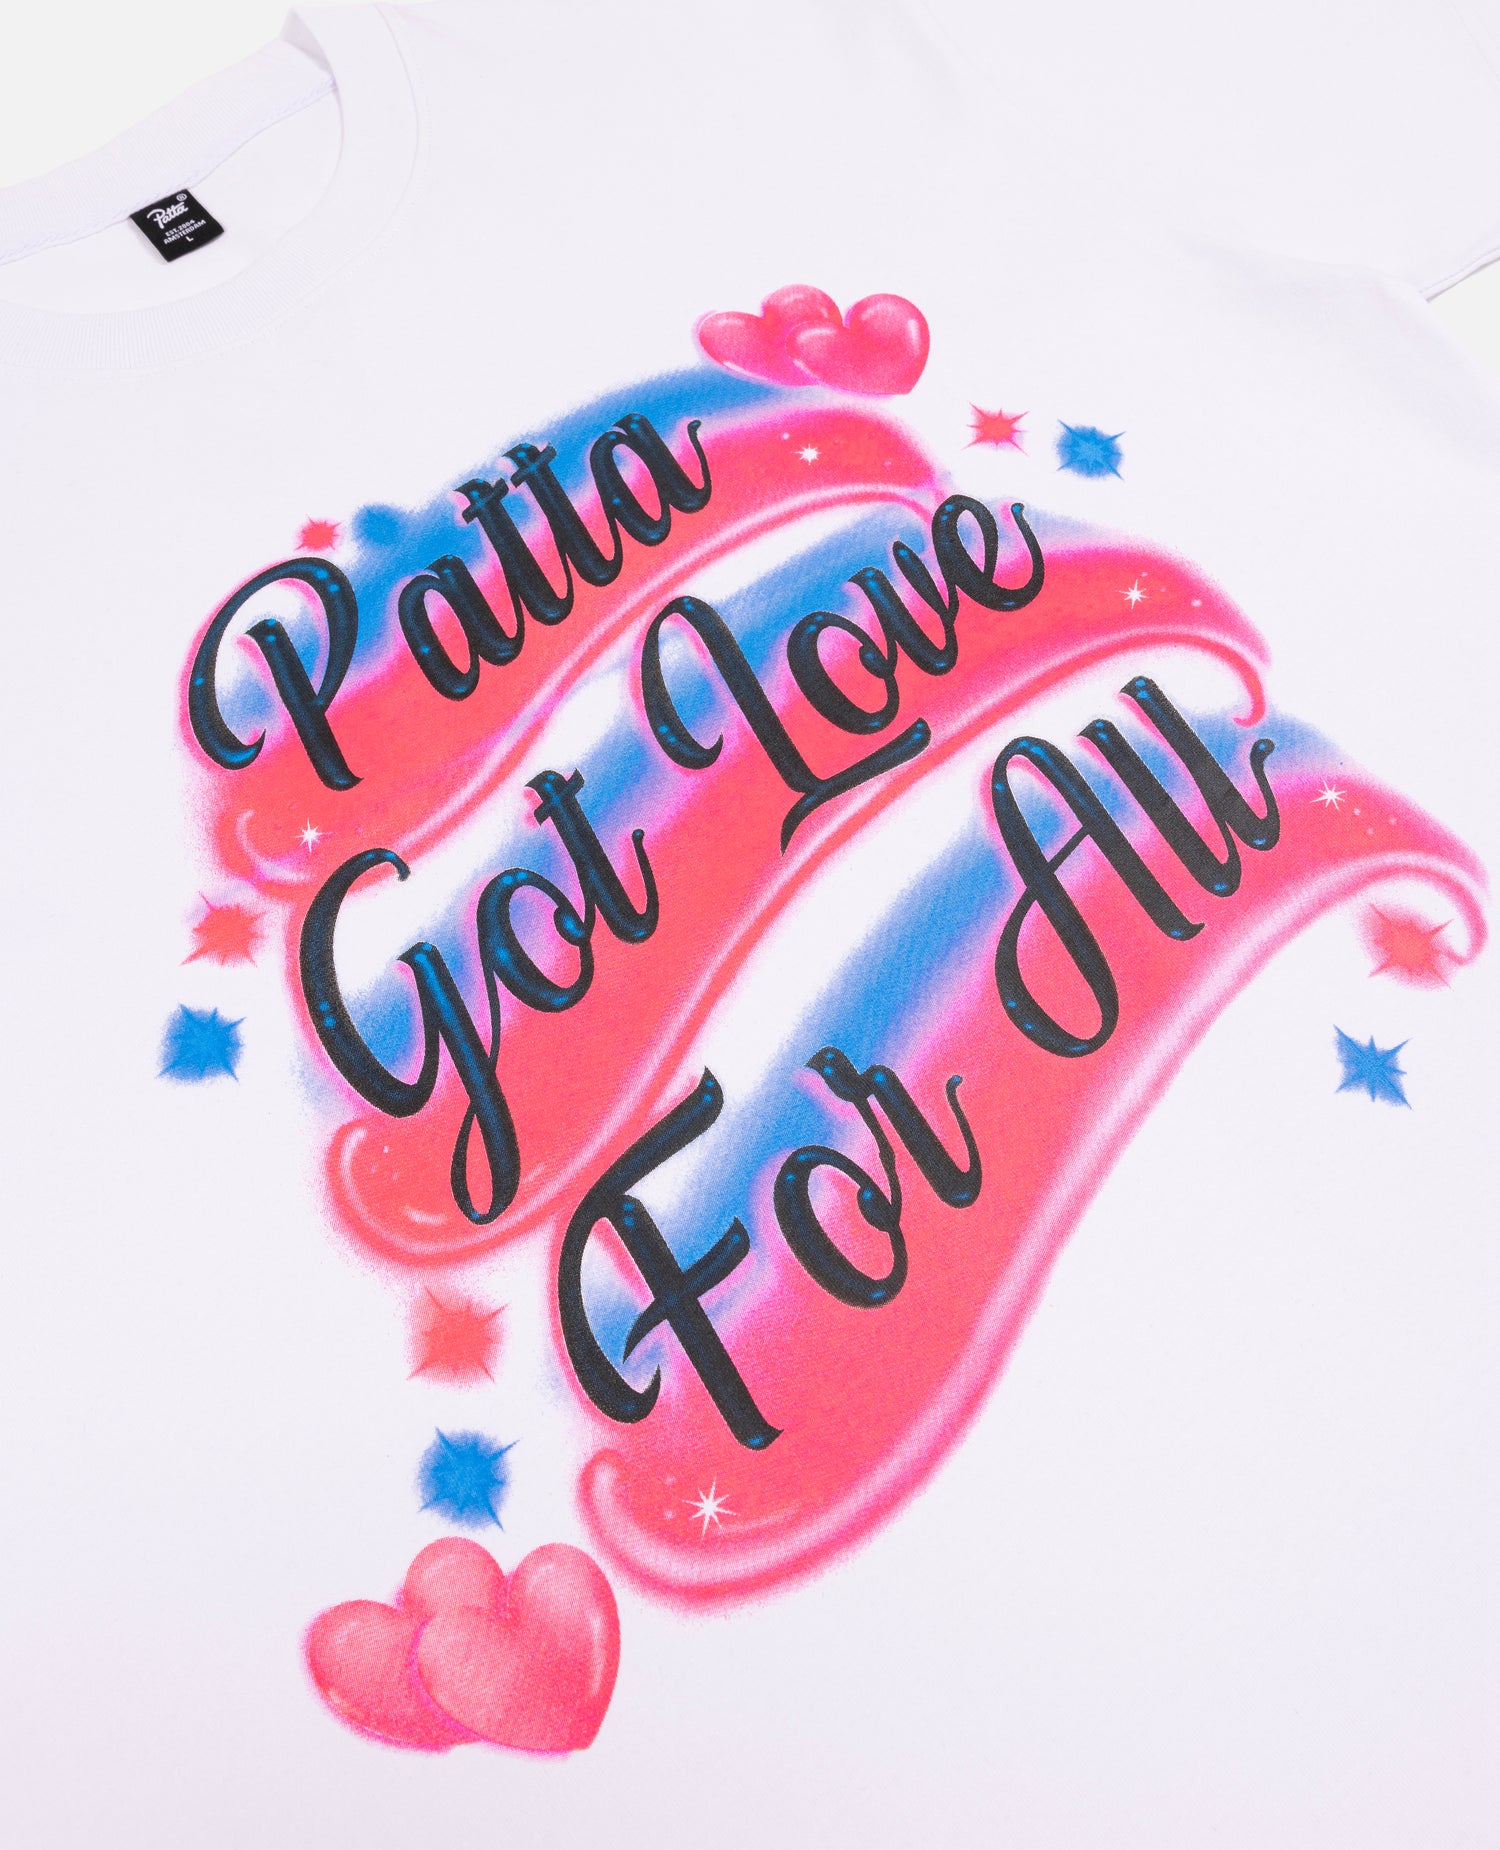 Patta Airbrush T-Shirt (White)